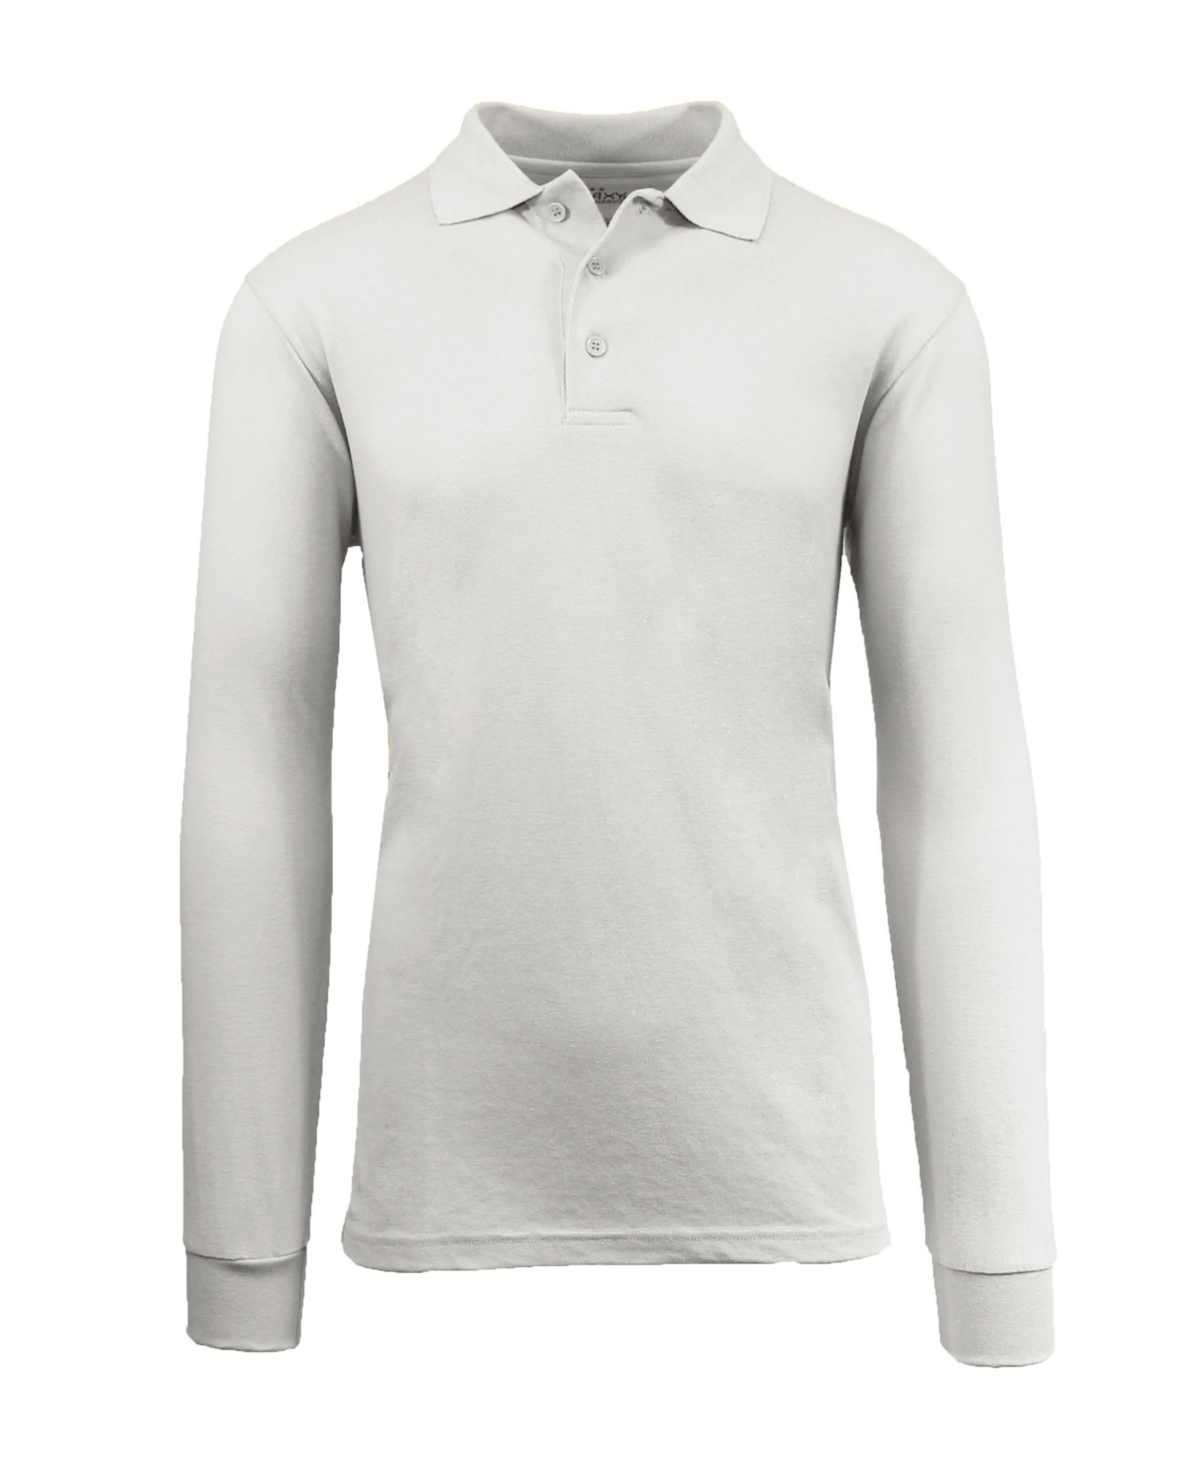 Men's Long Sleeve Pique Polo Shirt - Heather Grey